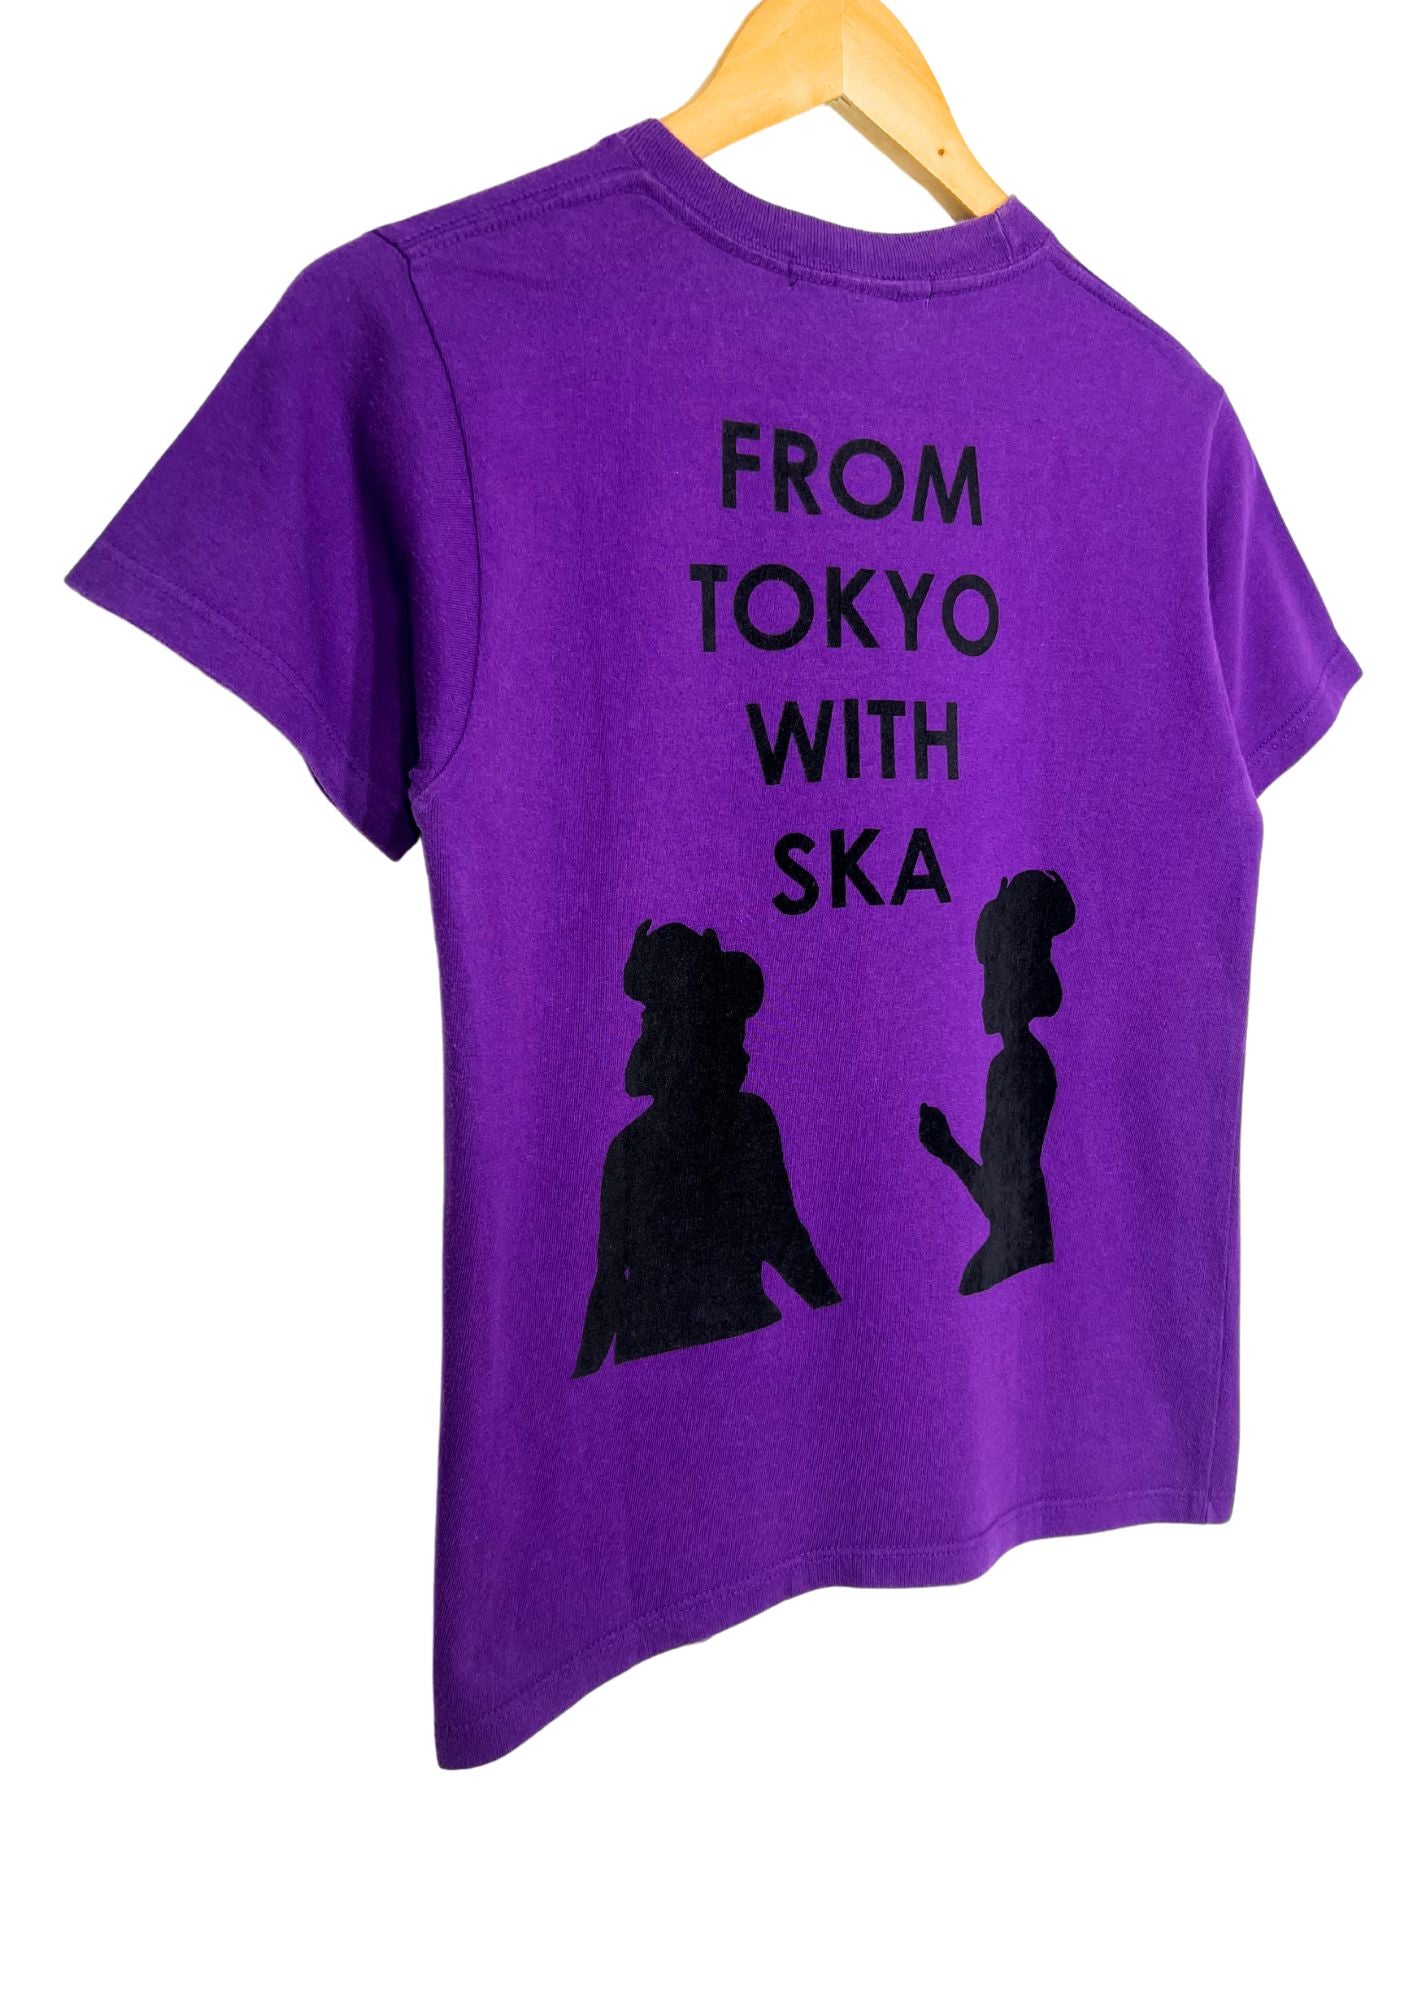 00s TOKYO SKA PARADISE ORCHESTRA 'From Tokyo with Ska' Japanese Band Baby Tee